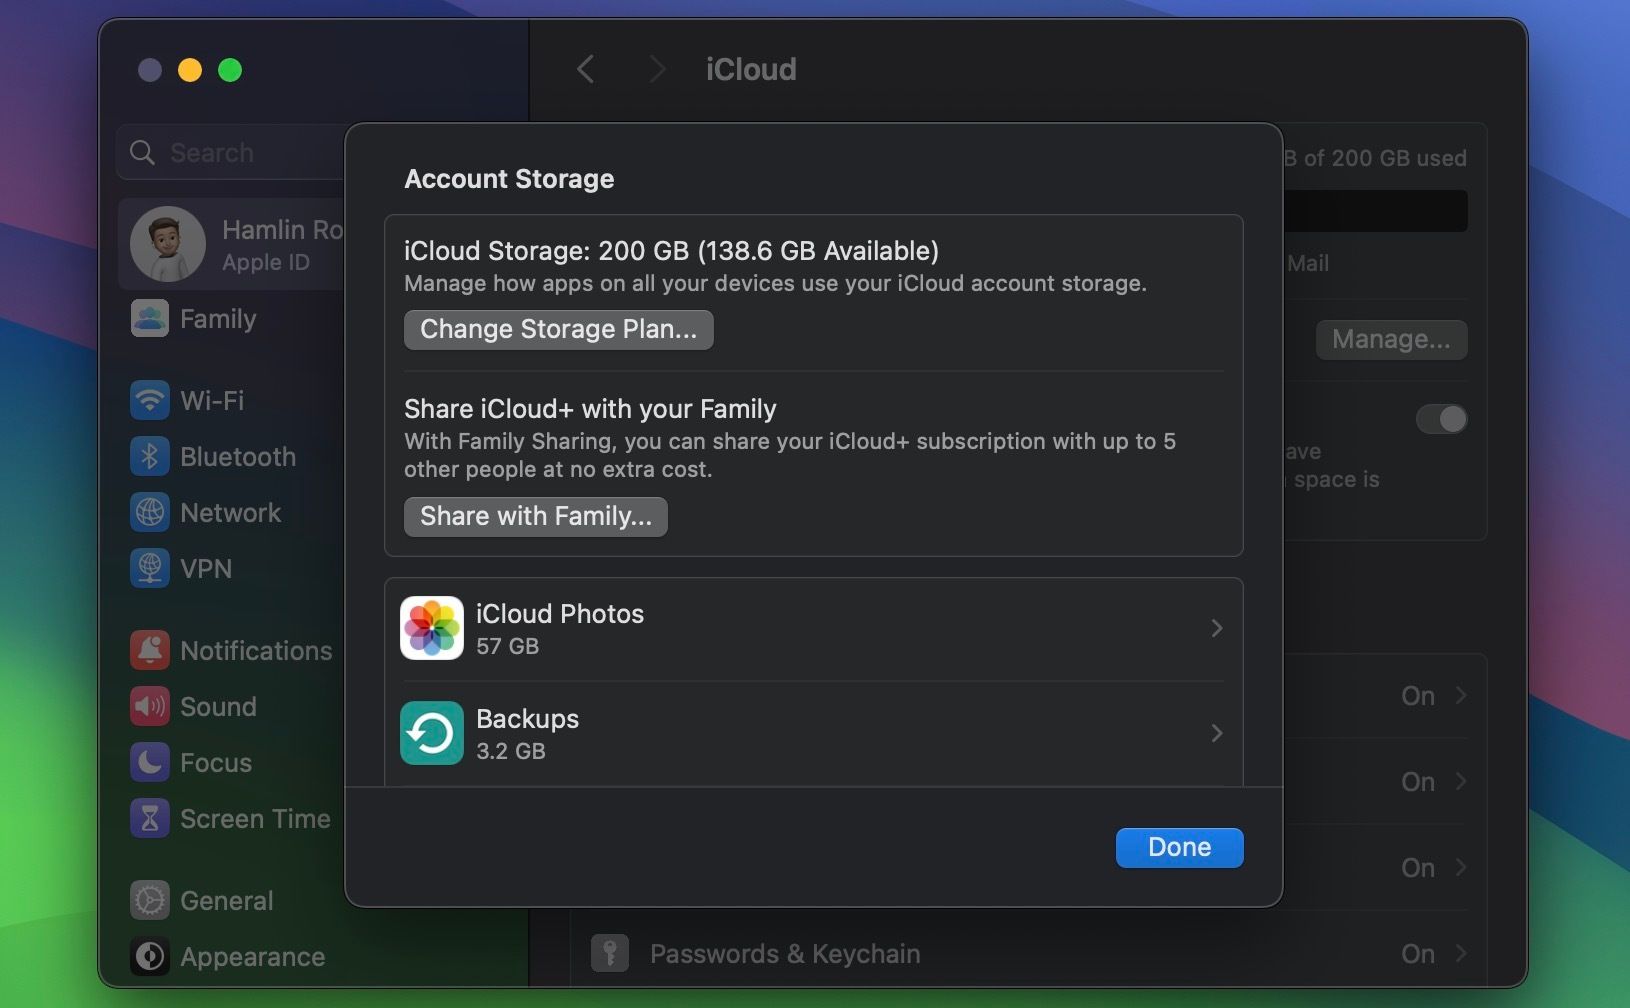 iCloud Account Storage menu in macOS